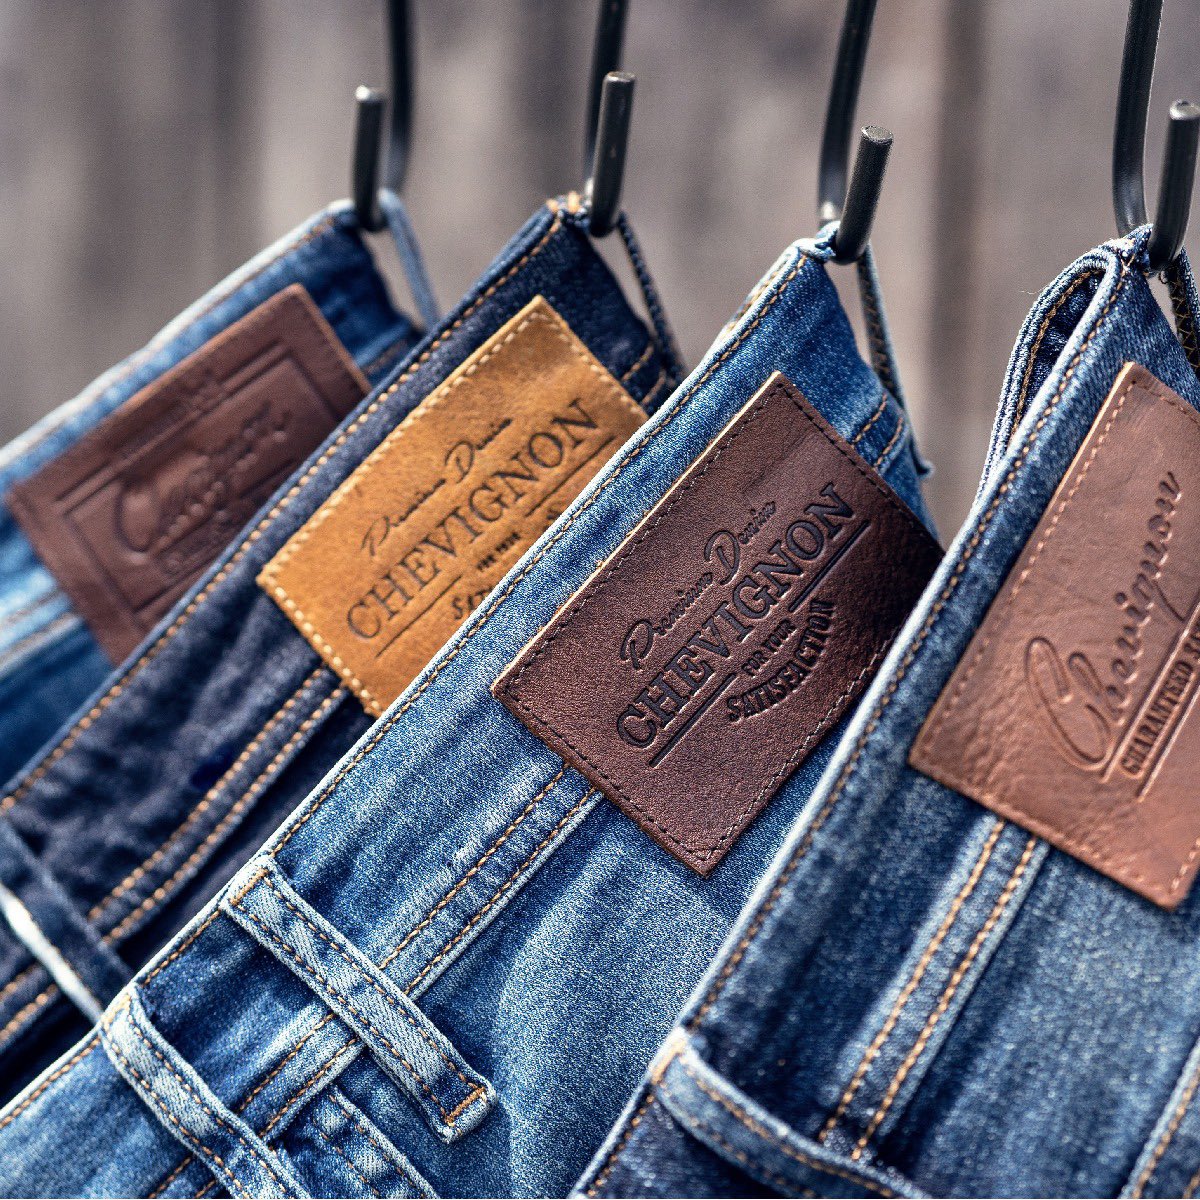 Chevignon no Twitter: "Jeans Chevignon | Nuevos detalles, lavados tendencias nuestras físicas y tienda online. ¡Te https://t.co/xQTAInkk9y https://t.co/KUm4bXCm3l" / Twitter